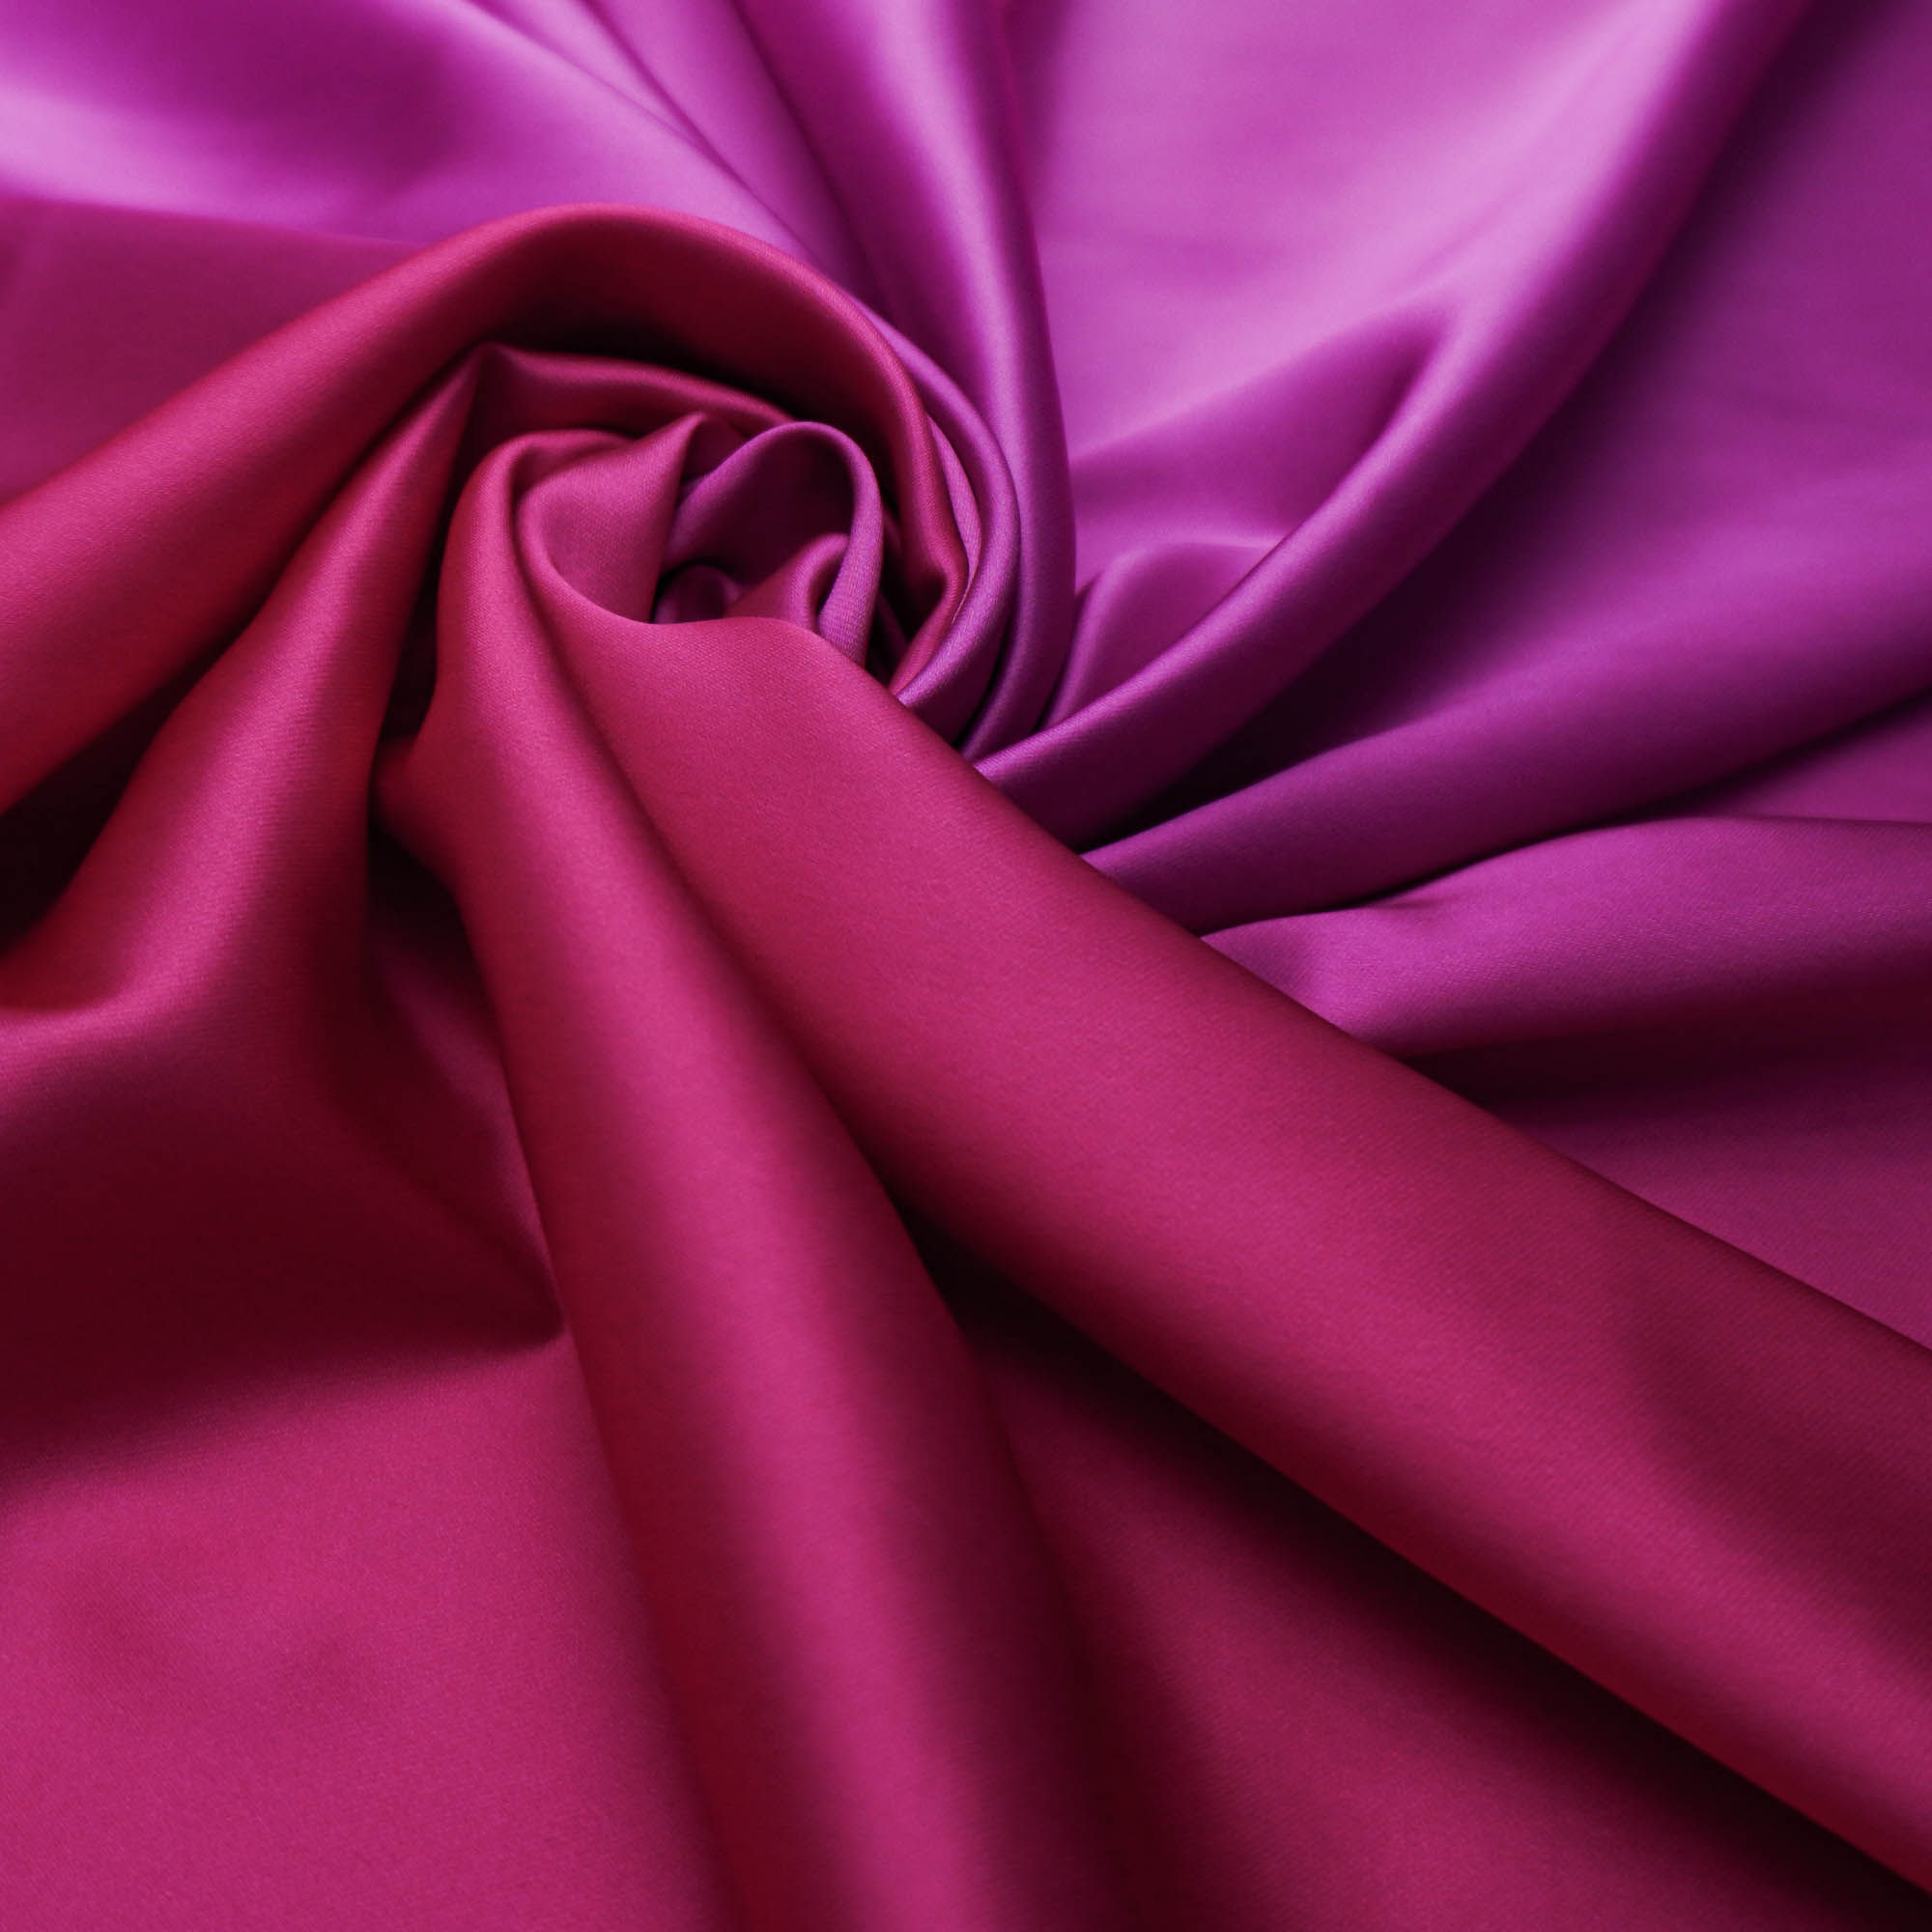 Tecido crepe acetinado com elastano degradê pink/fúcsia/rosa (tecido italiano legítimo)